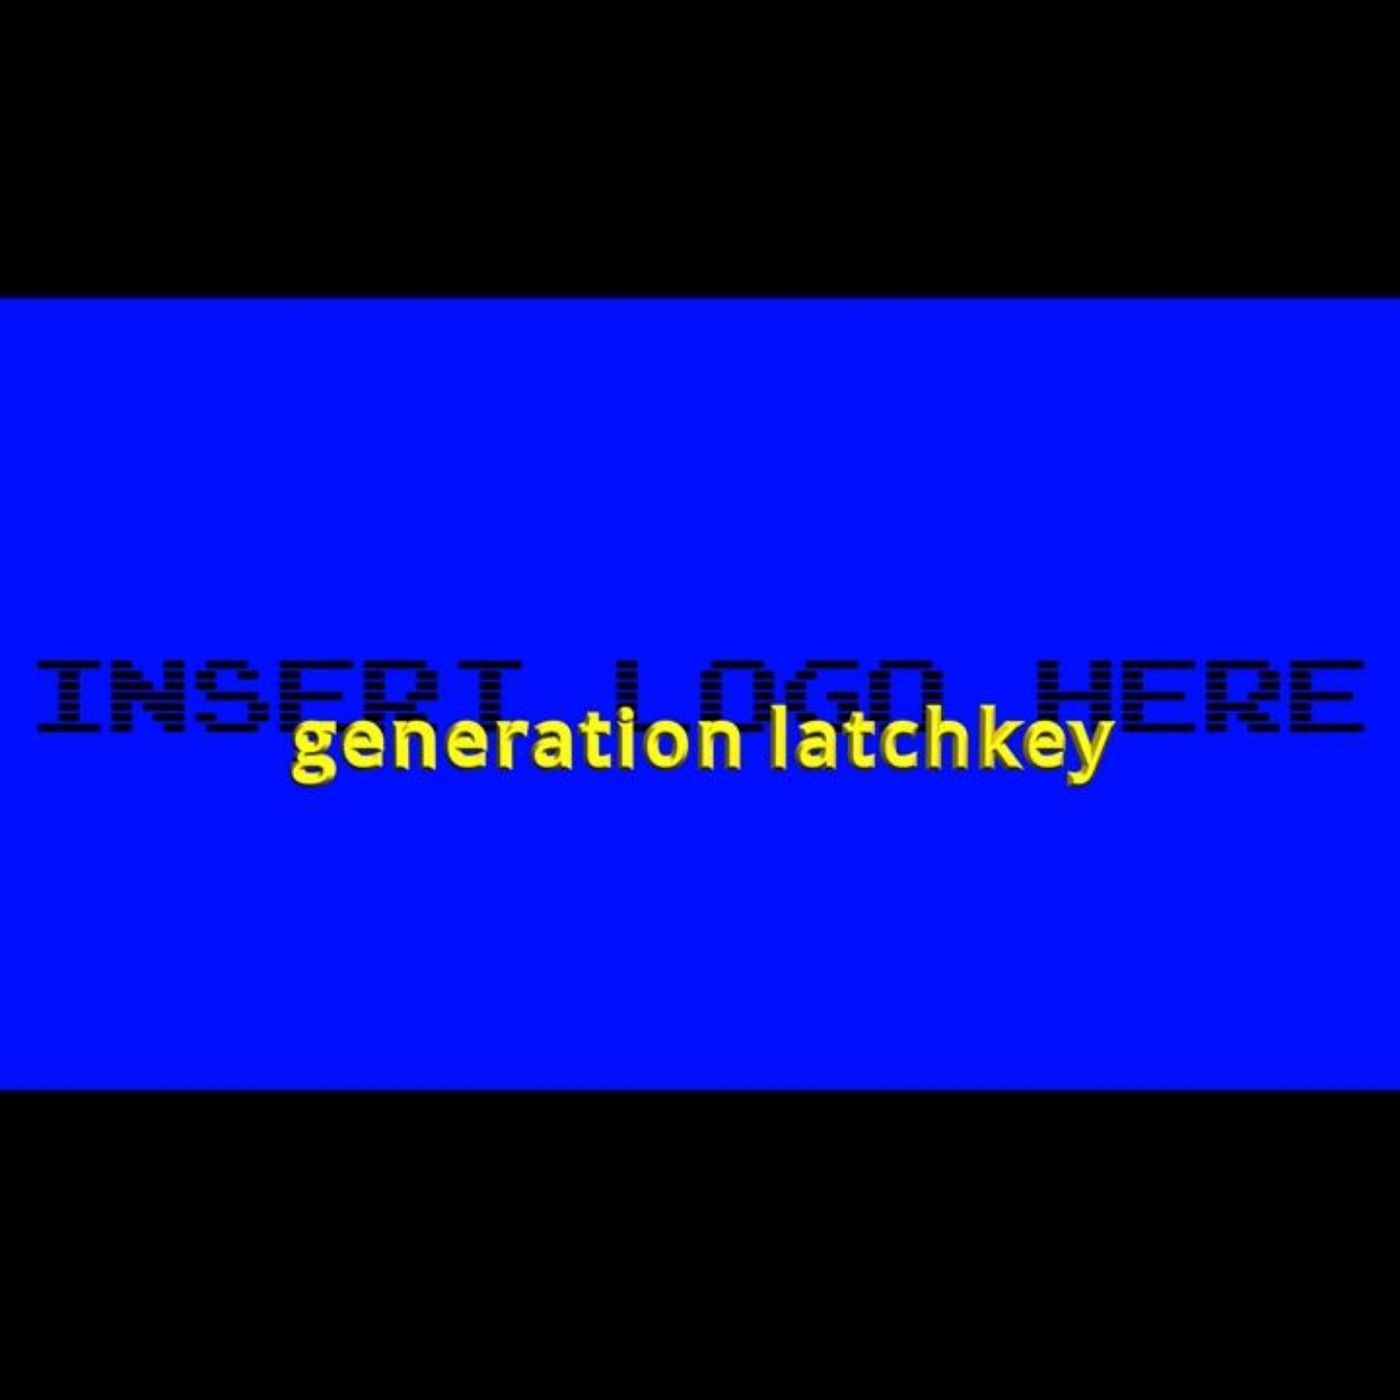 Generation Latchkey